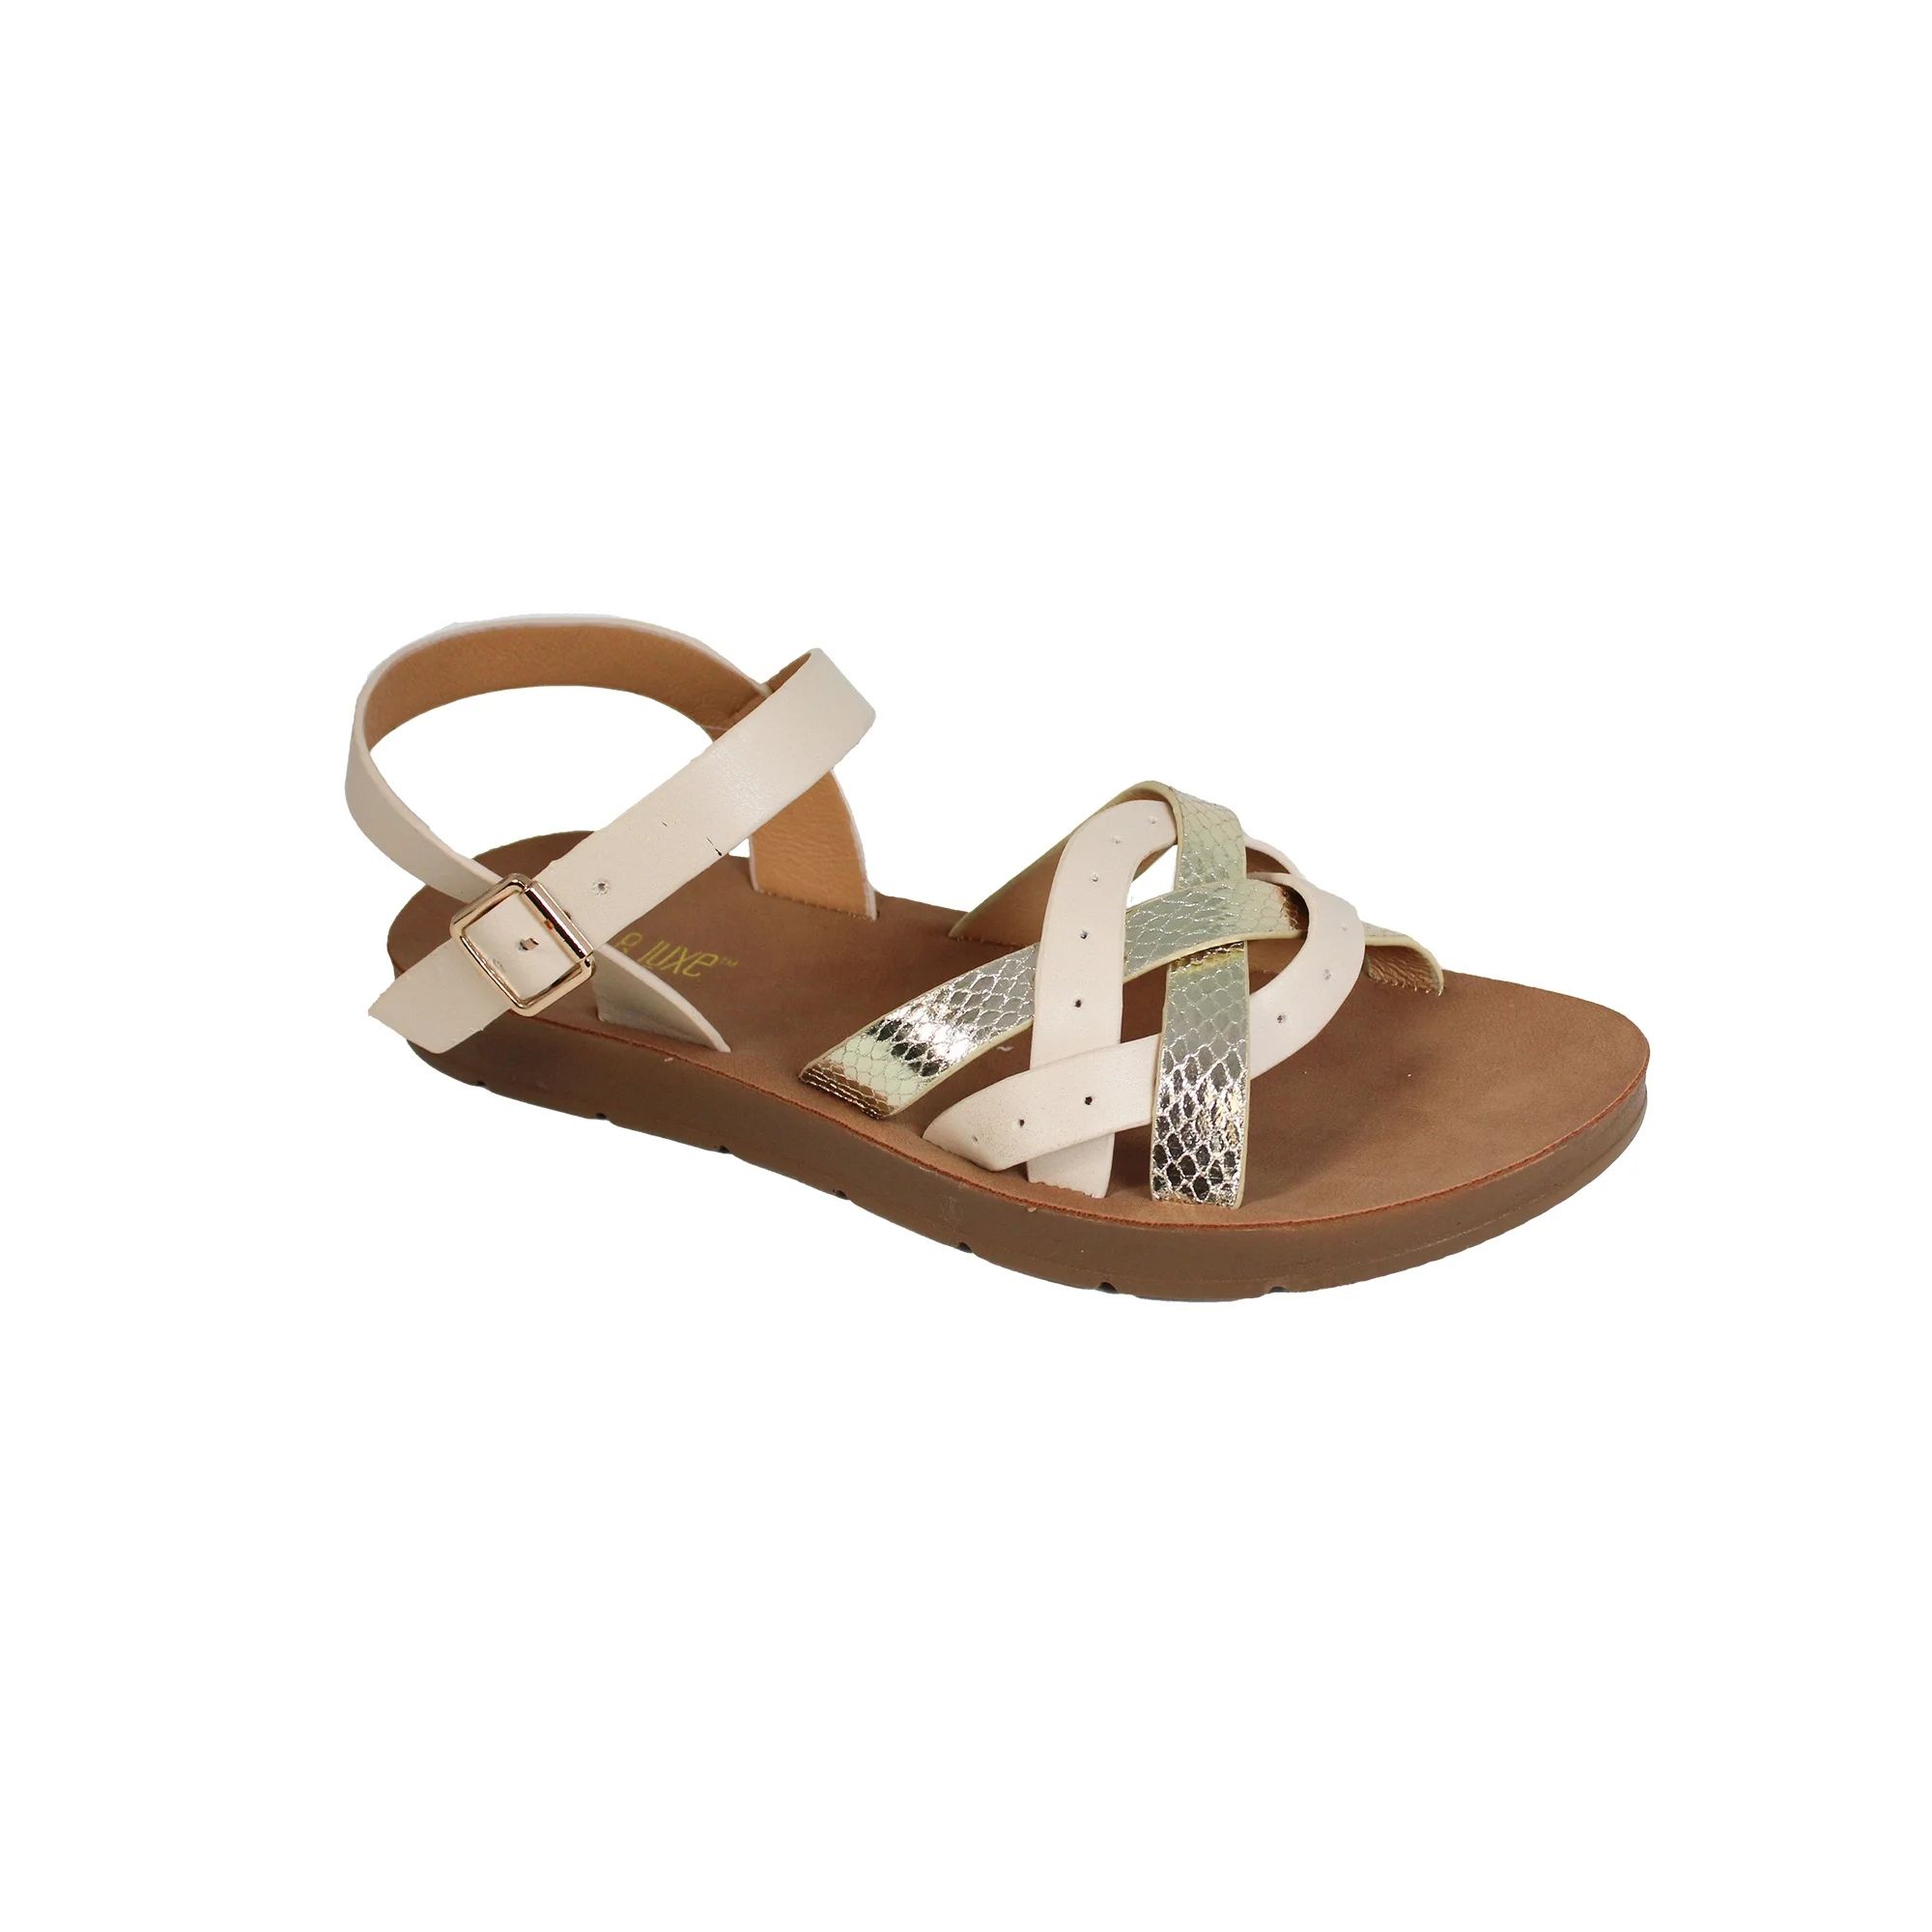 Fifth & Luxe Women’s Metallic Strappy Comfort Sandals, Sizes 6-11 | Walmart (US)